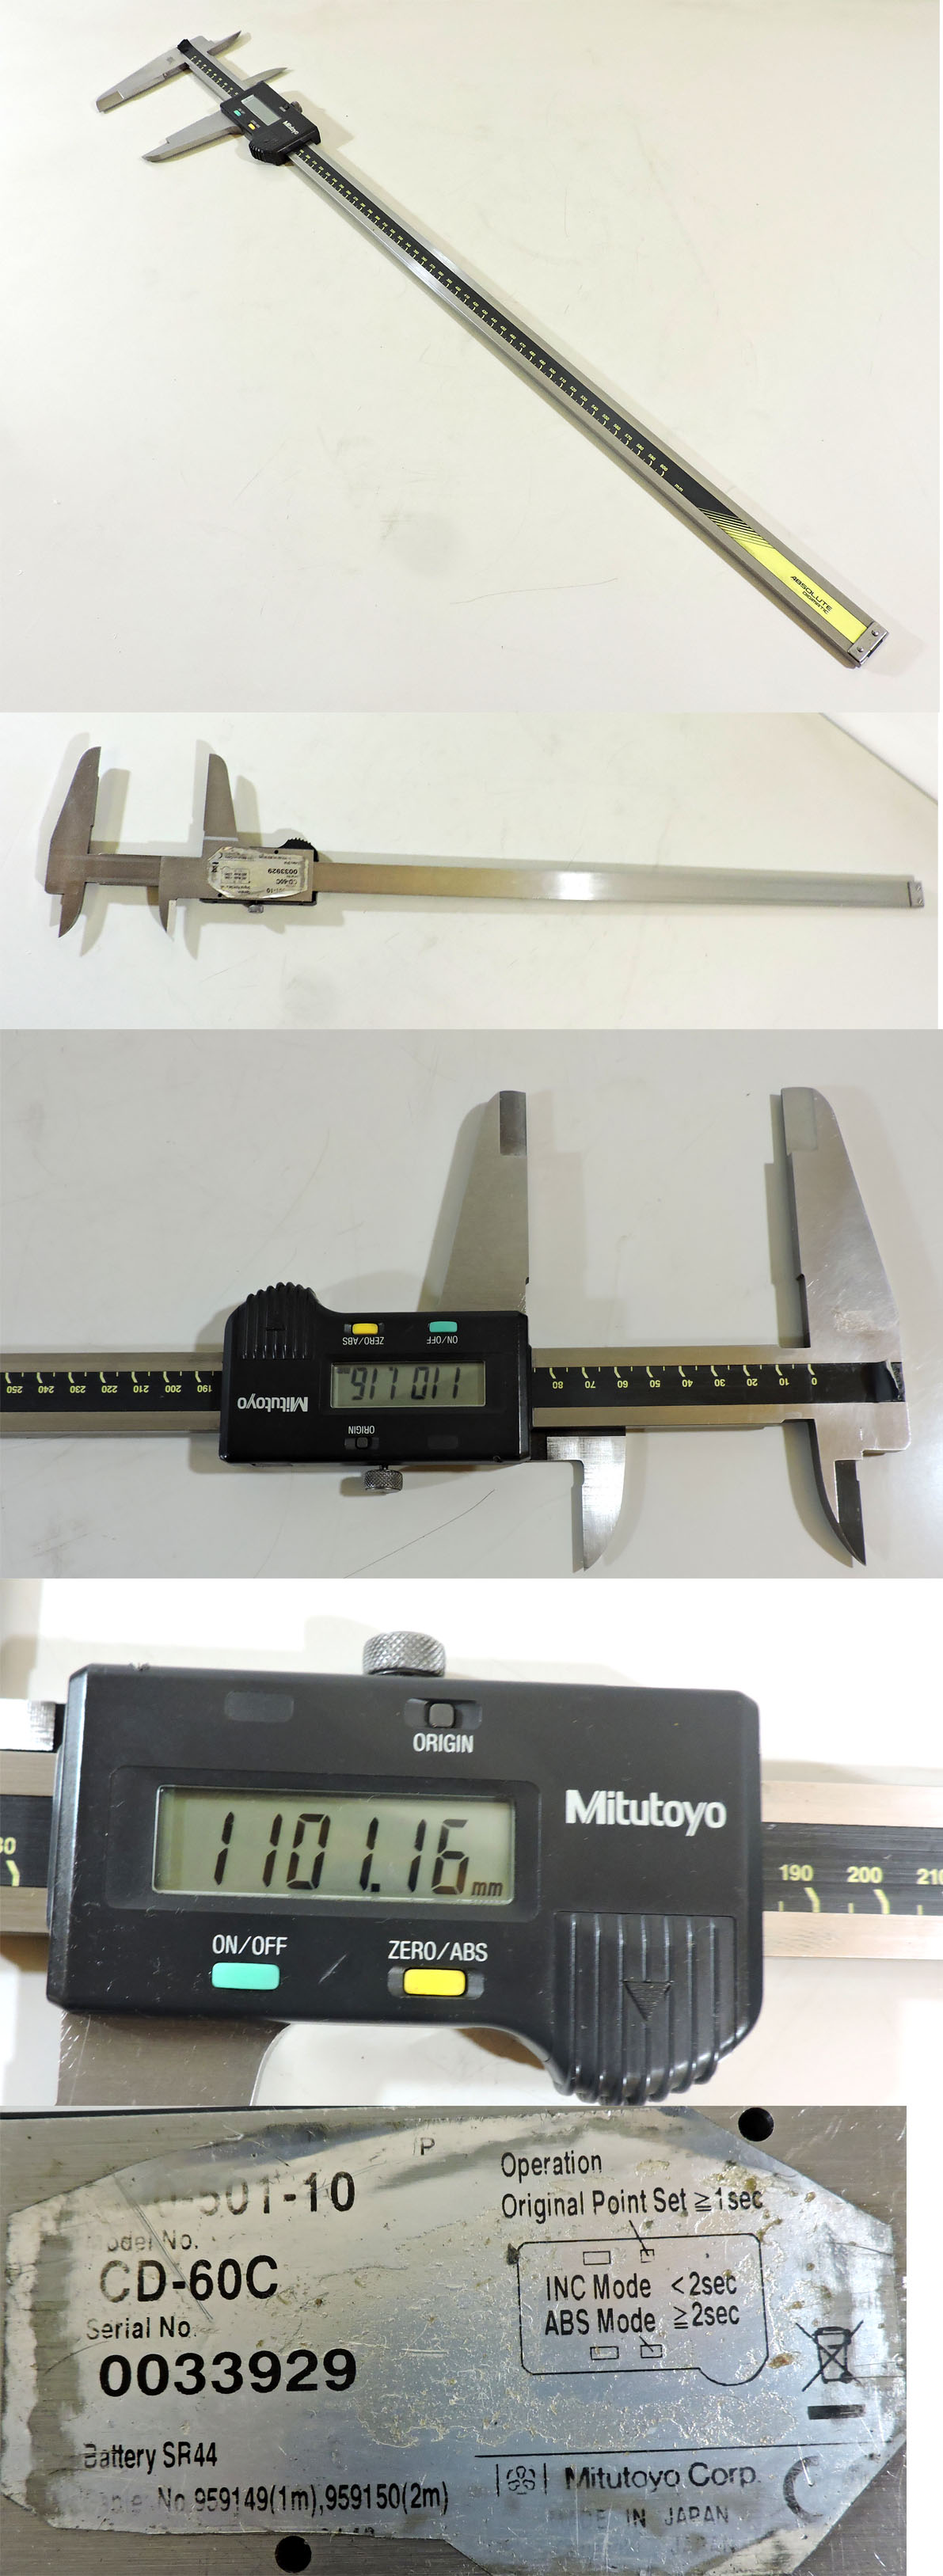 日本測定工具プロマックスデジタルノギス150ミリ ミツトヨ価格 16,940